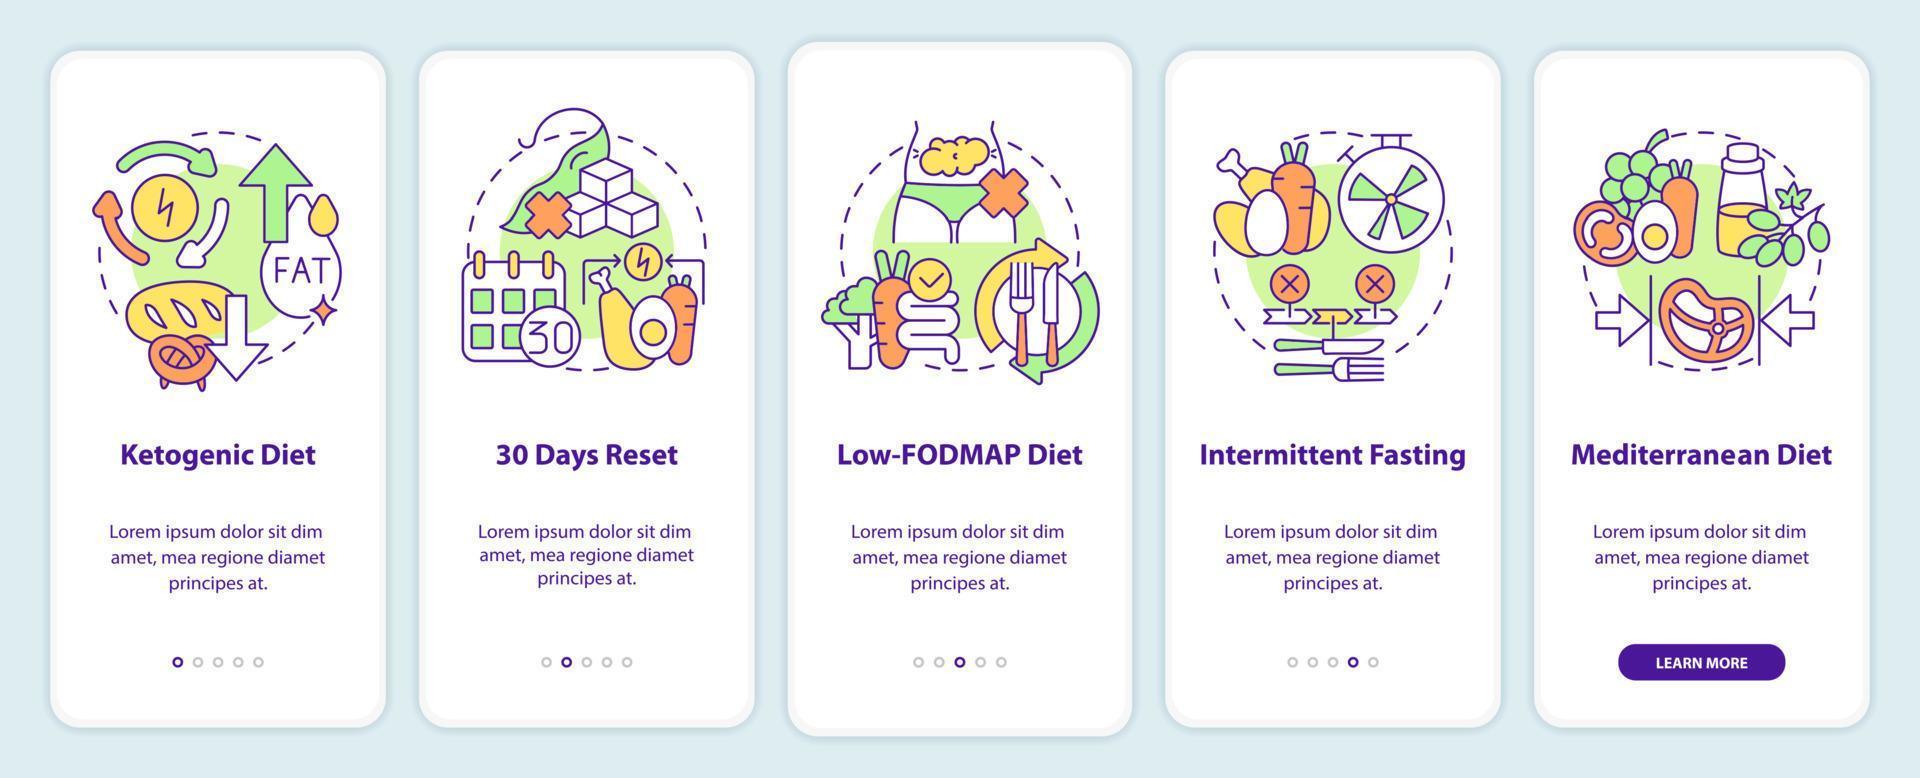 dietas da moda integrando a tela do aplicativo móvel. nutrição saudável passo a passo 5 passos páginas de instruções gráficas com conceitos lineares. ui, ux, modelo de gui. vetor